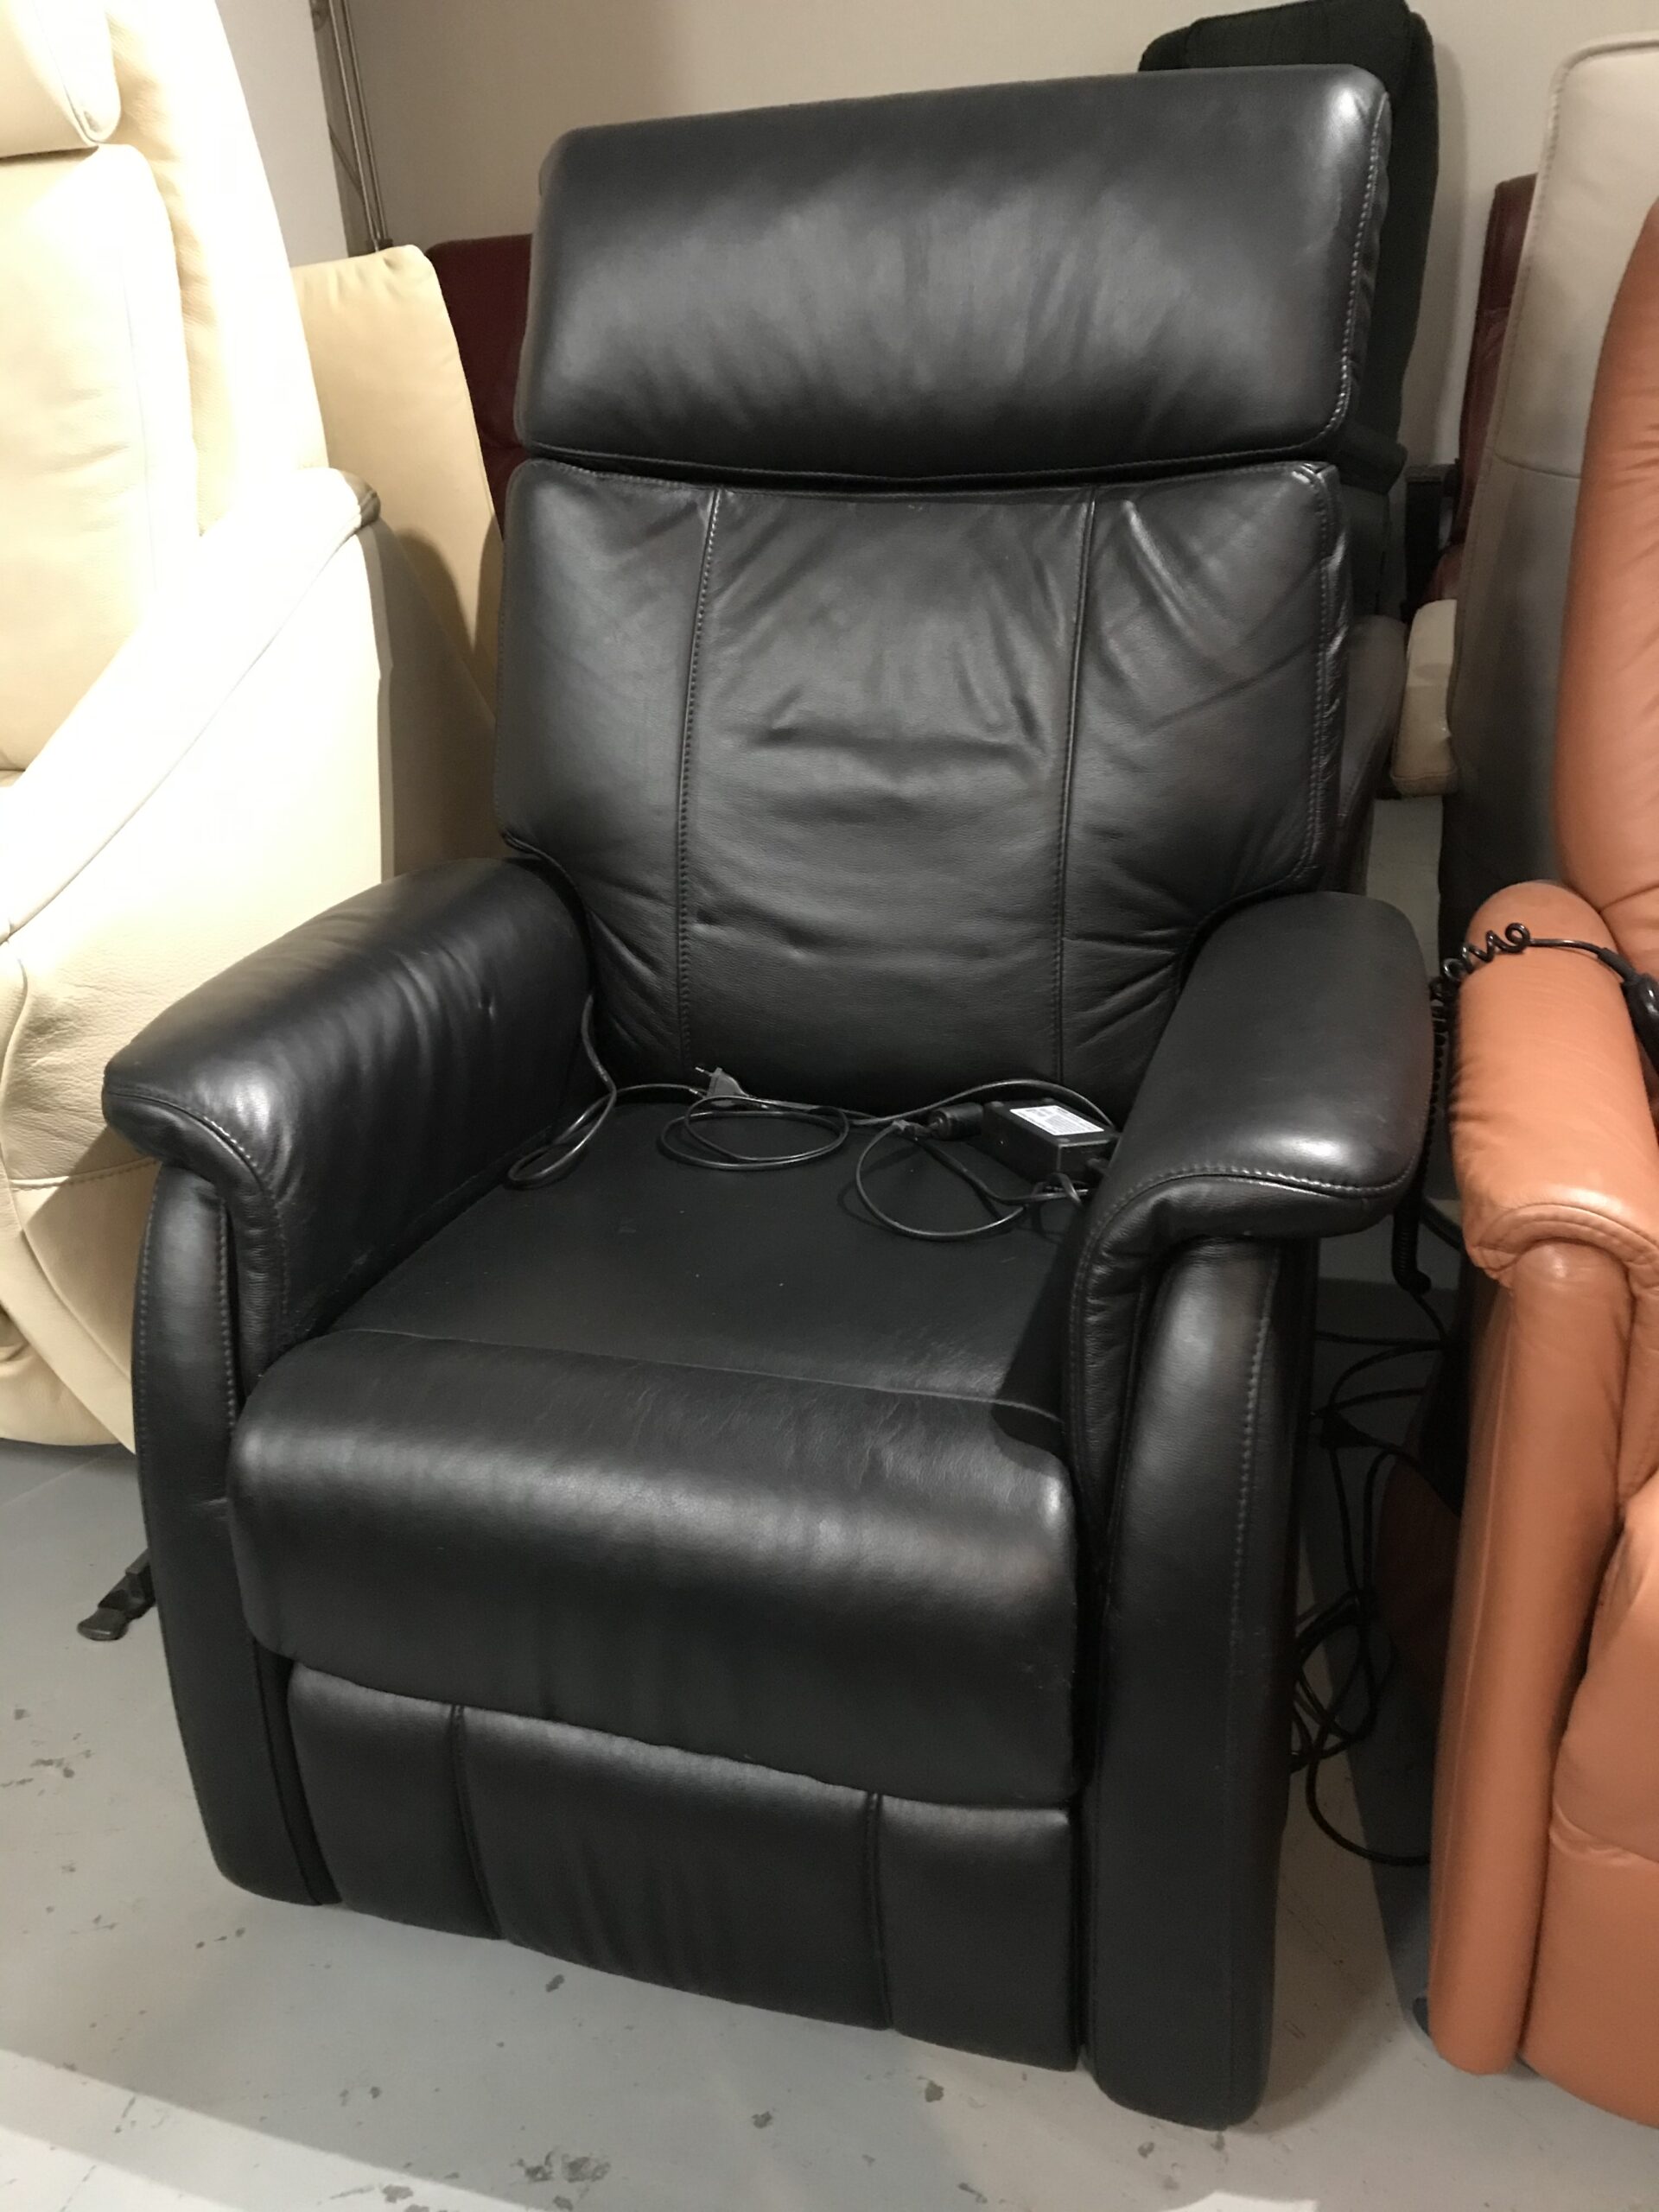 Wantrouwen Millimeter Augment Elastoform Zwart lederen Sta op stoel - Sta op stoel Alkmaar